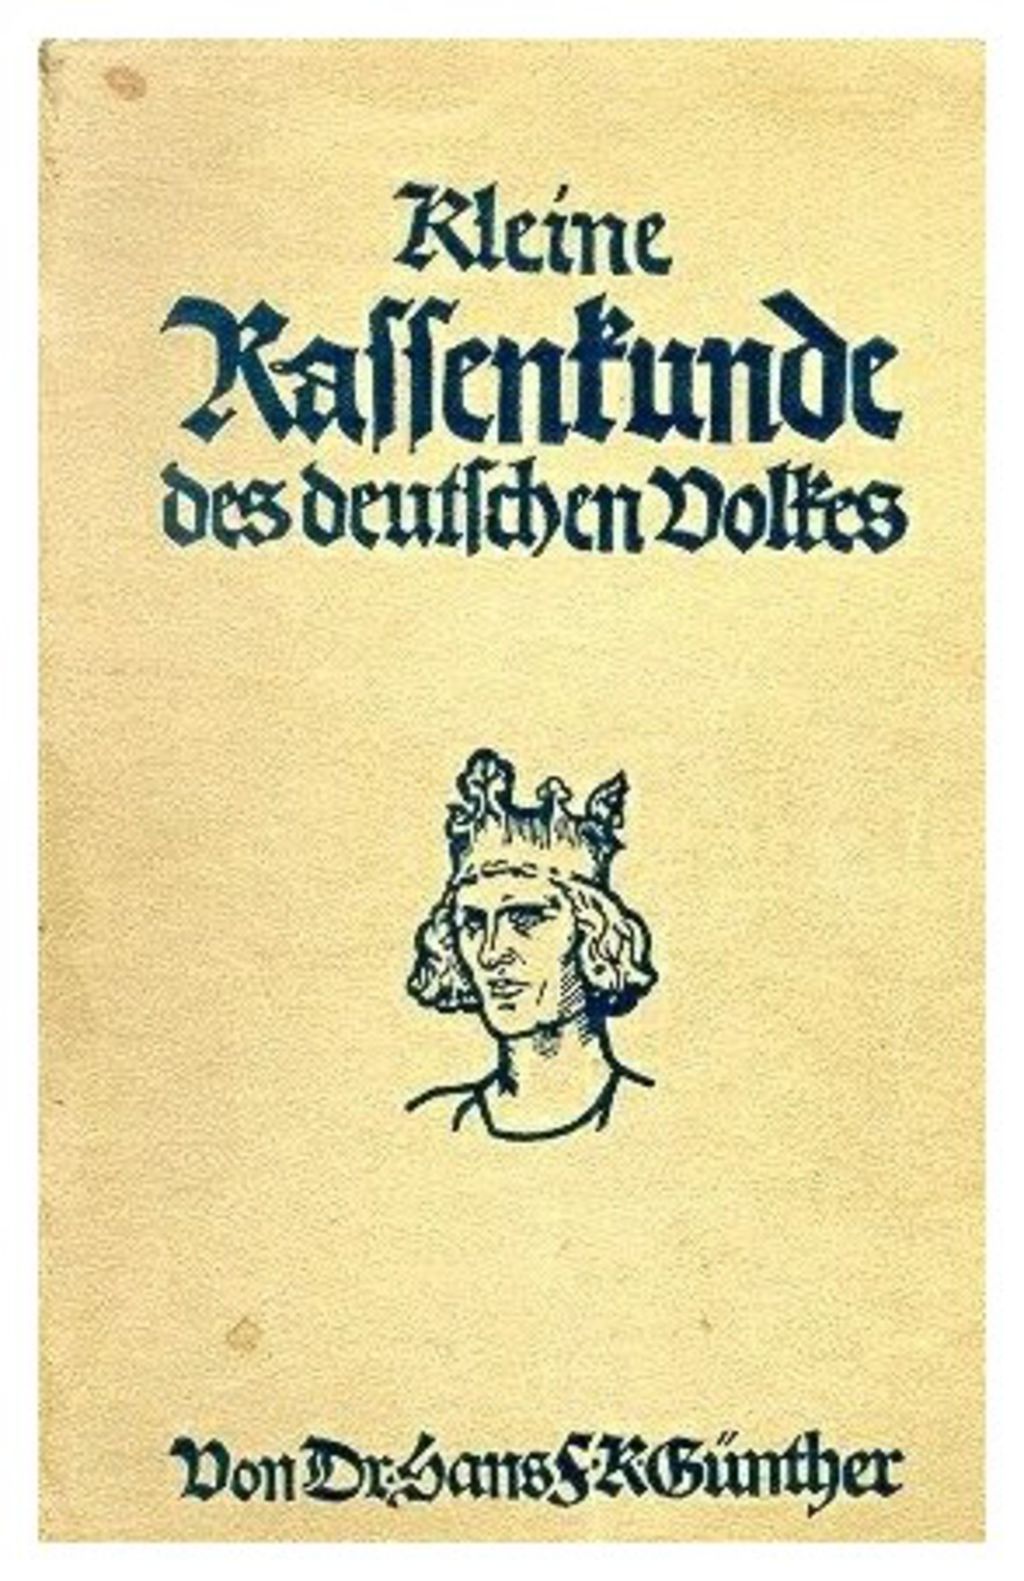 Exponat: Buch: "Kleine Rassenkunde des deutschen Volkes", 1937